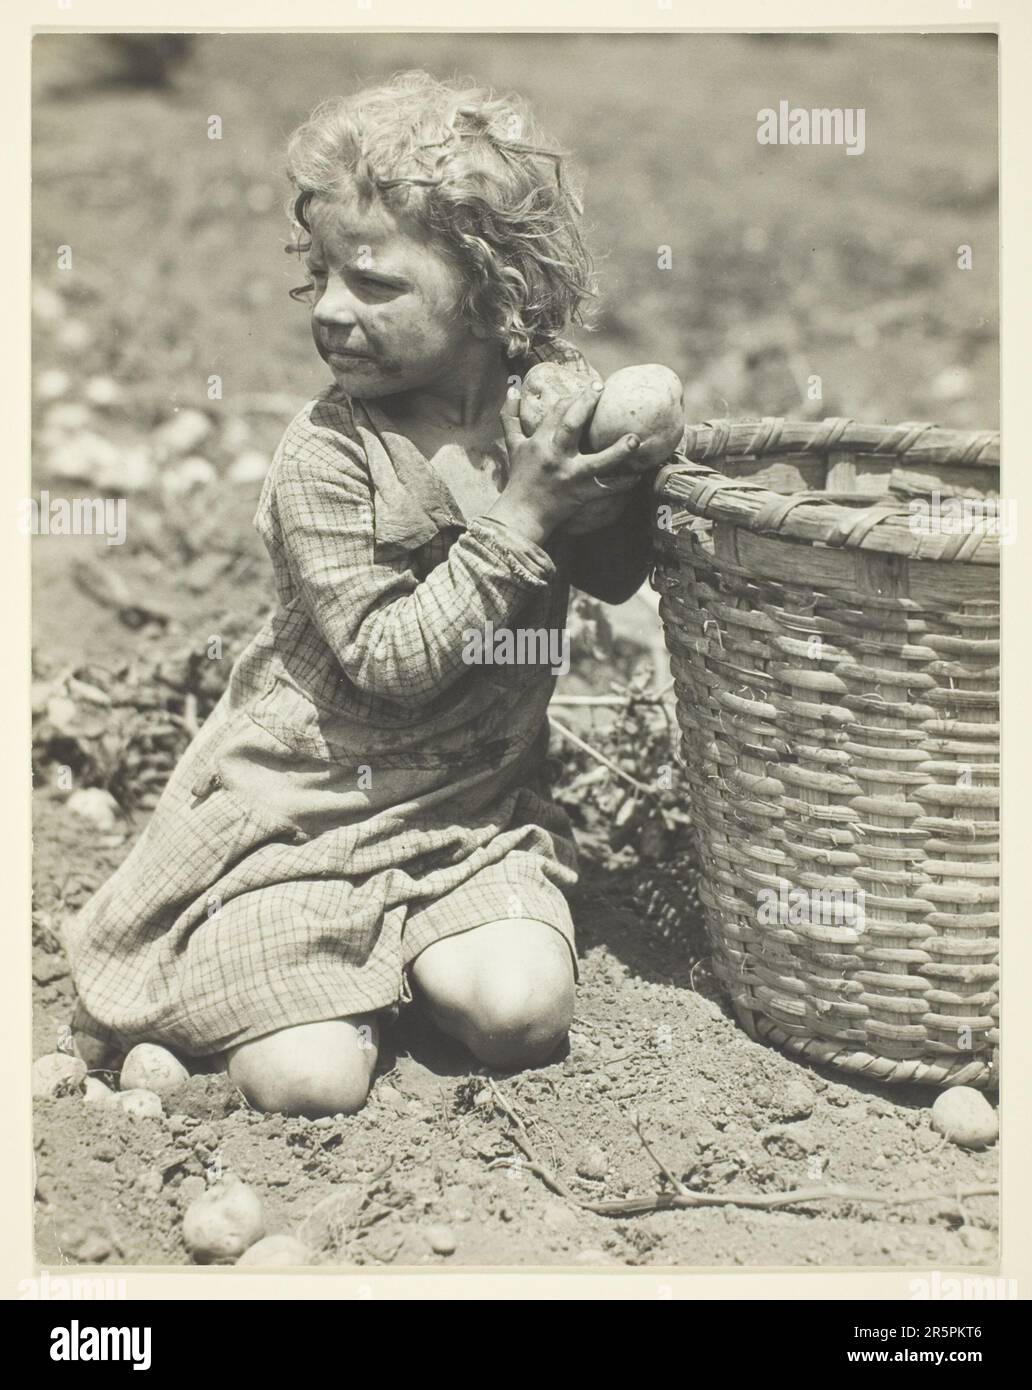 Bambino lavoro sulla fattoria Data: 1930 artista: Lewis Wickes Hine American, 1874–1940 Foto Stock